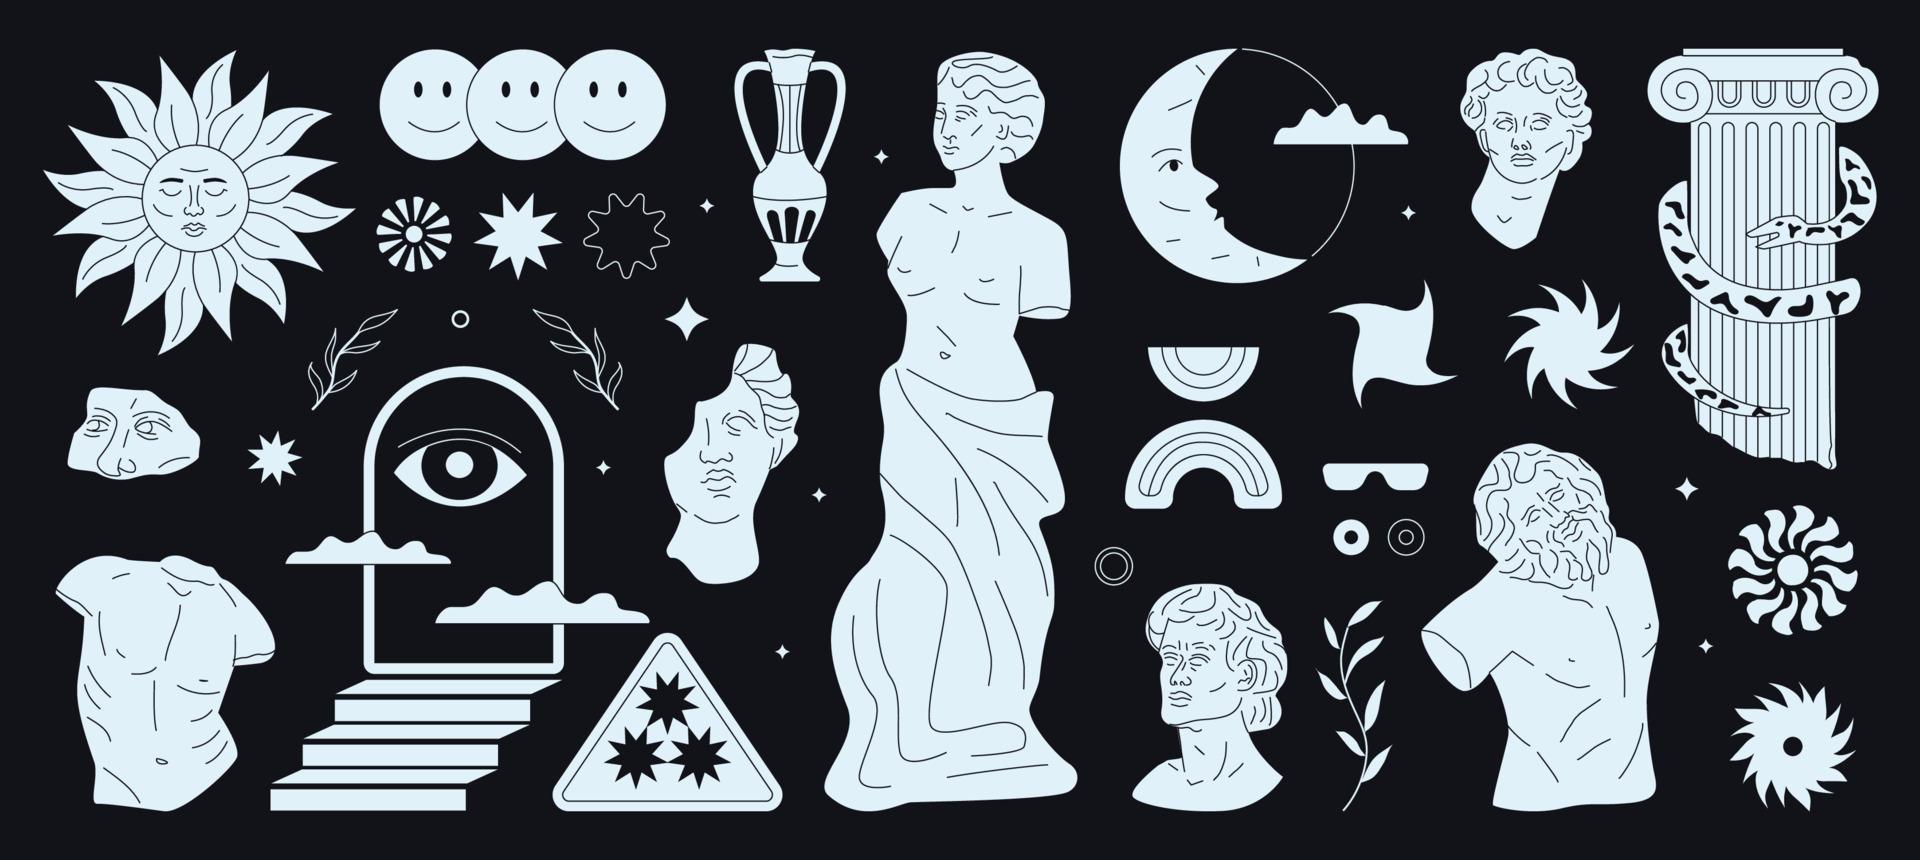 figuras de moda monocromáticas dibujadas a mano y estatuas griegas estéticas. vector